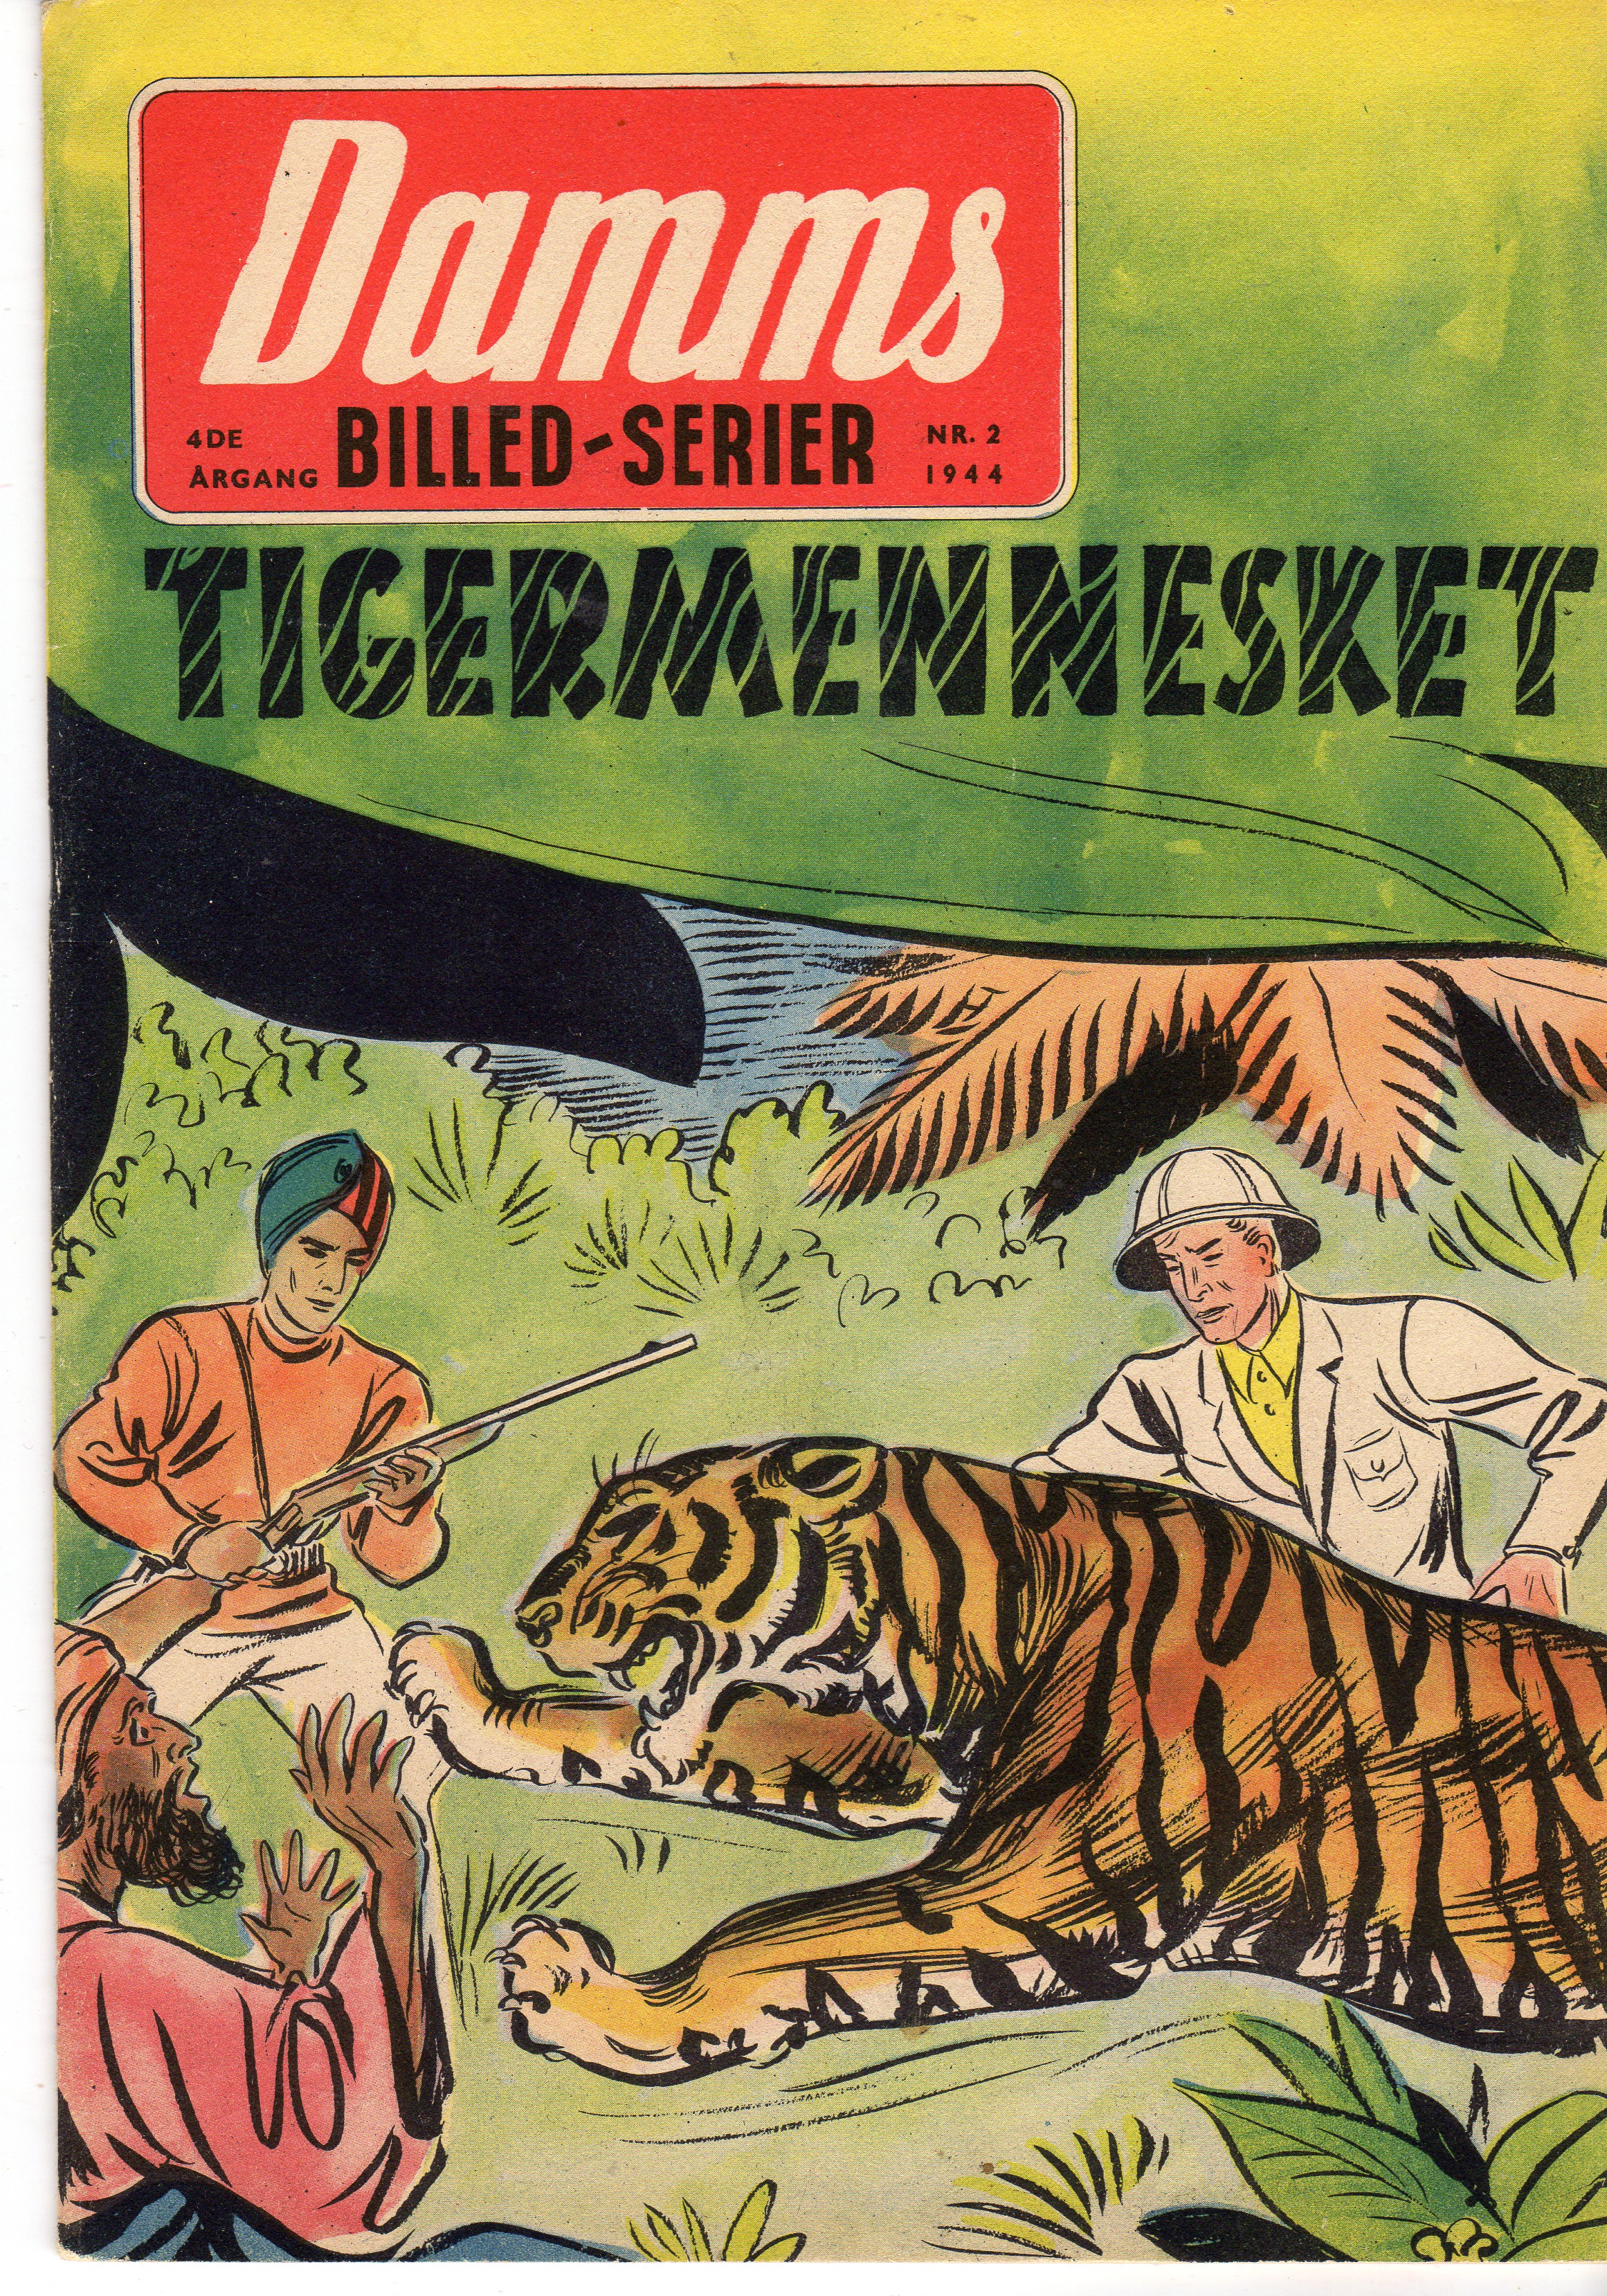 nr 2 1944 Tigermennesket vf